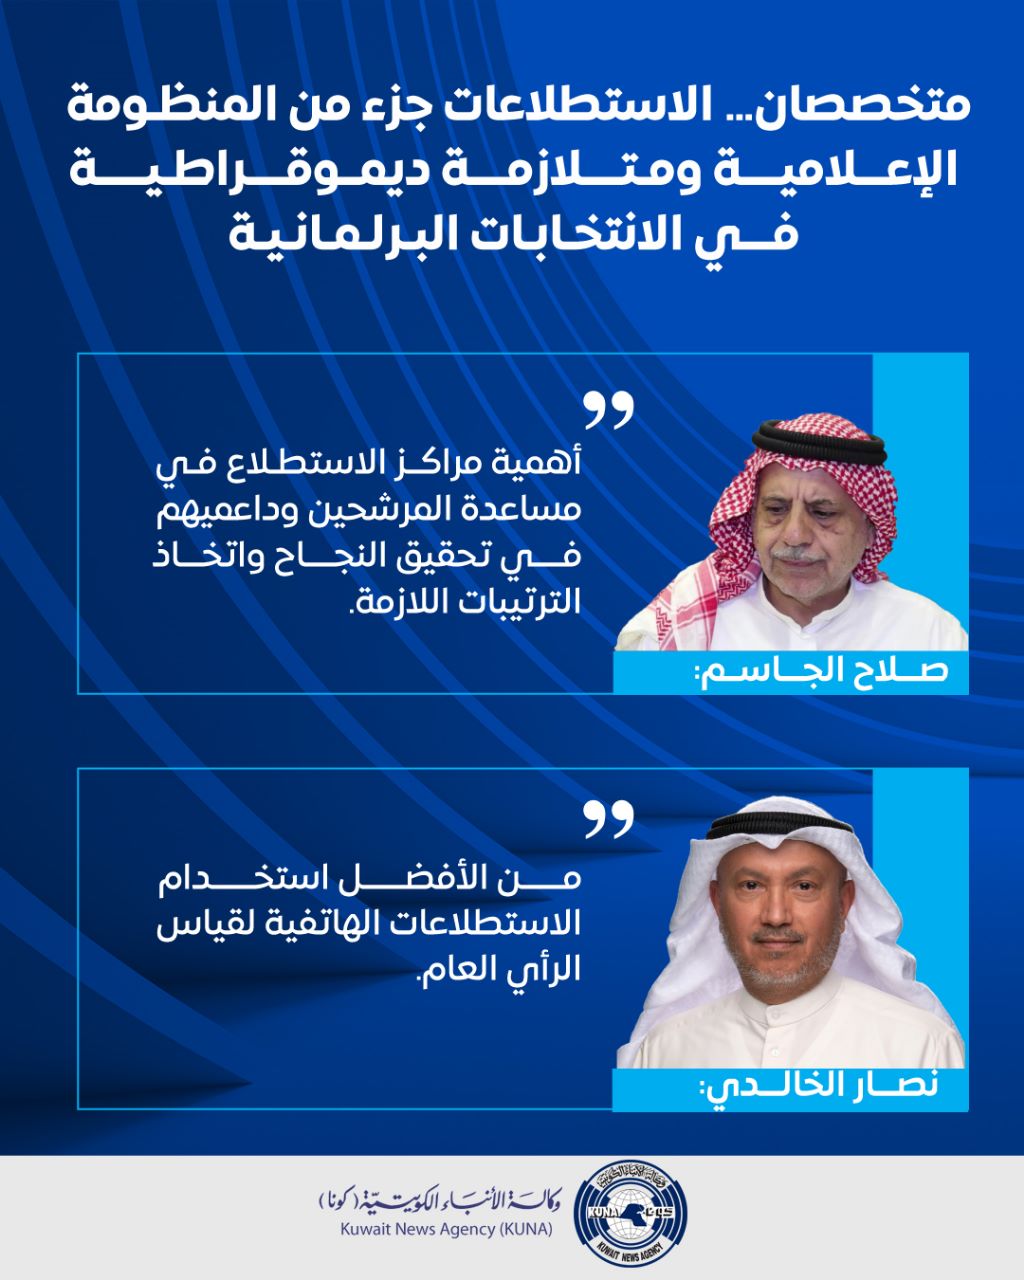 متخصصان: استطلاعات الرأي جزء لا يتجزأ من المنظومة الإعلامية والتجربة الديمقراطية في الكويت